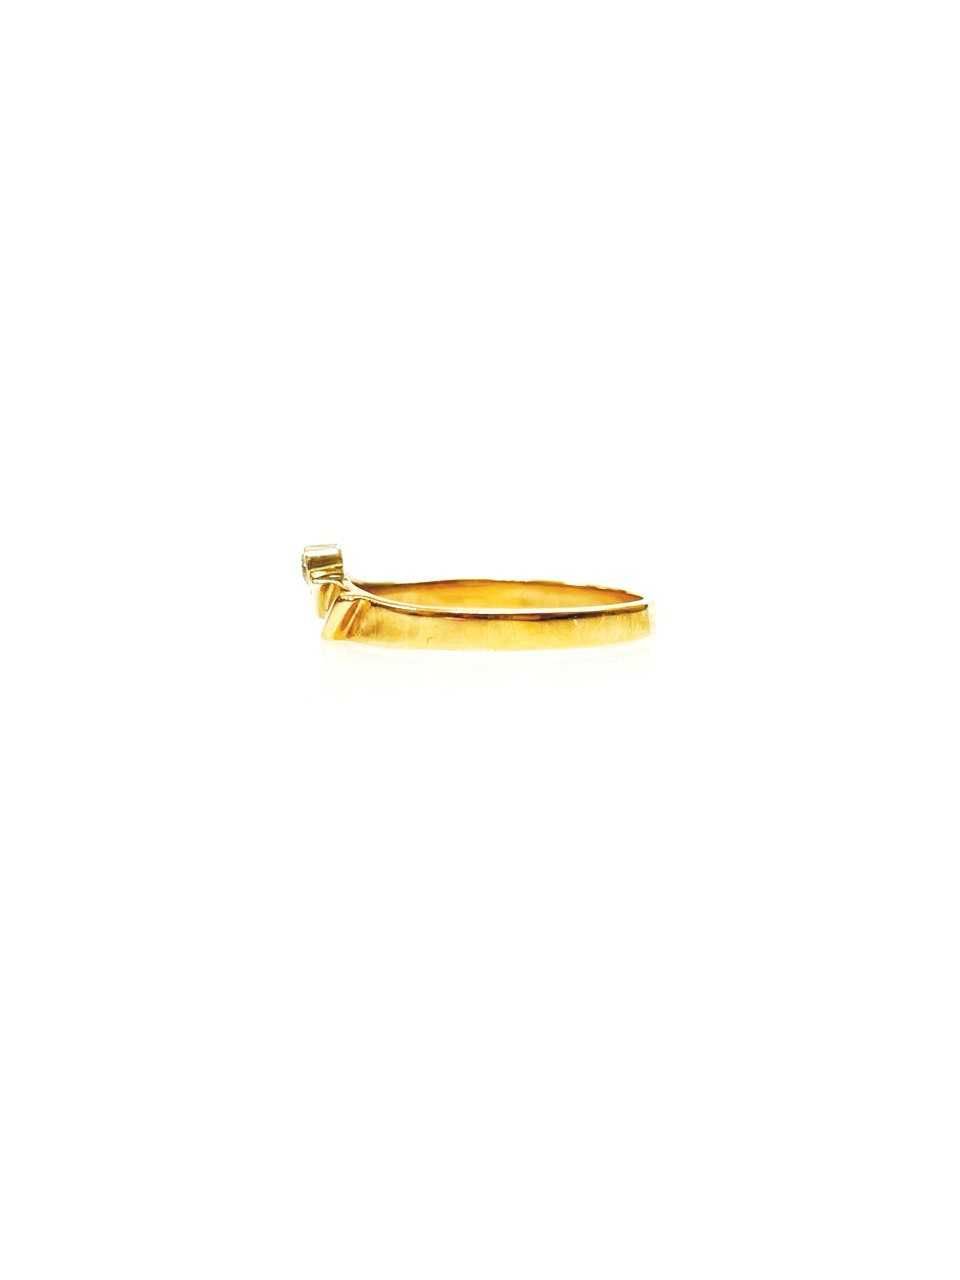 Новое золотое кольцо с бриллиантом/Нова золота каблучка з діамантом